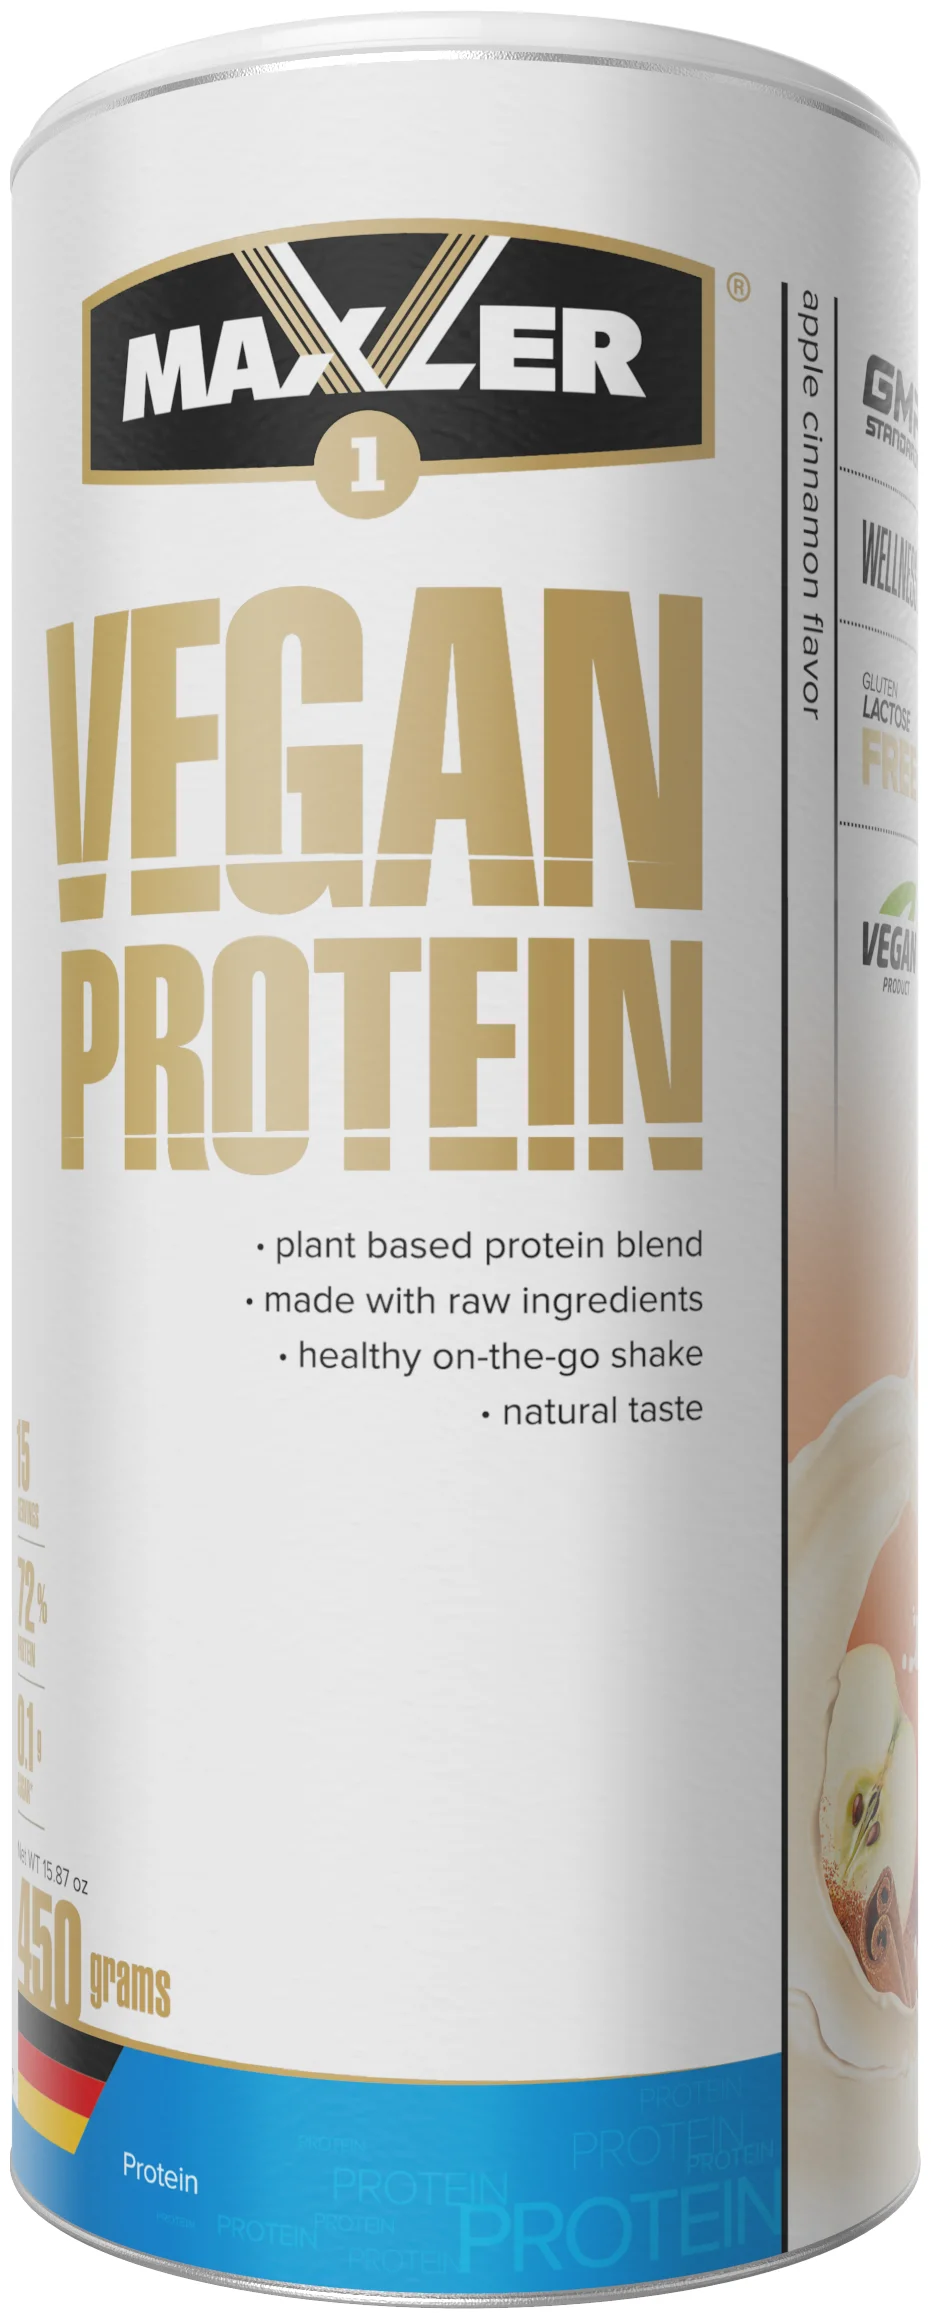 Maxler Vegan Protein - тип: растительный